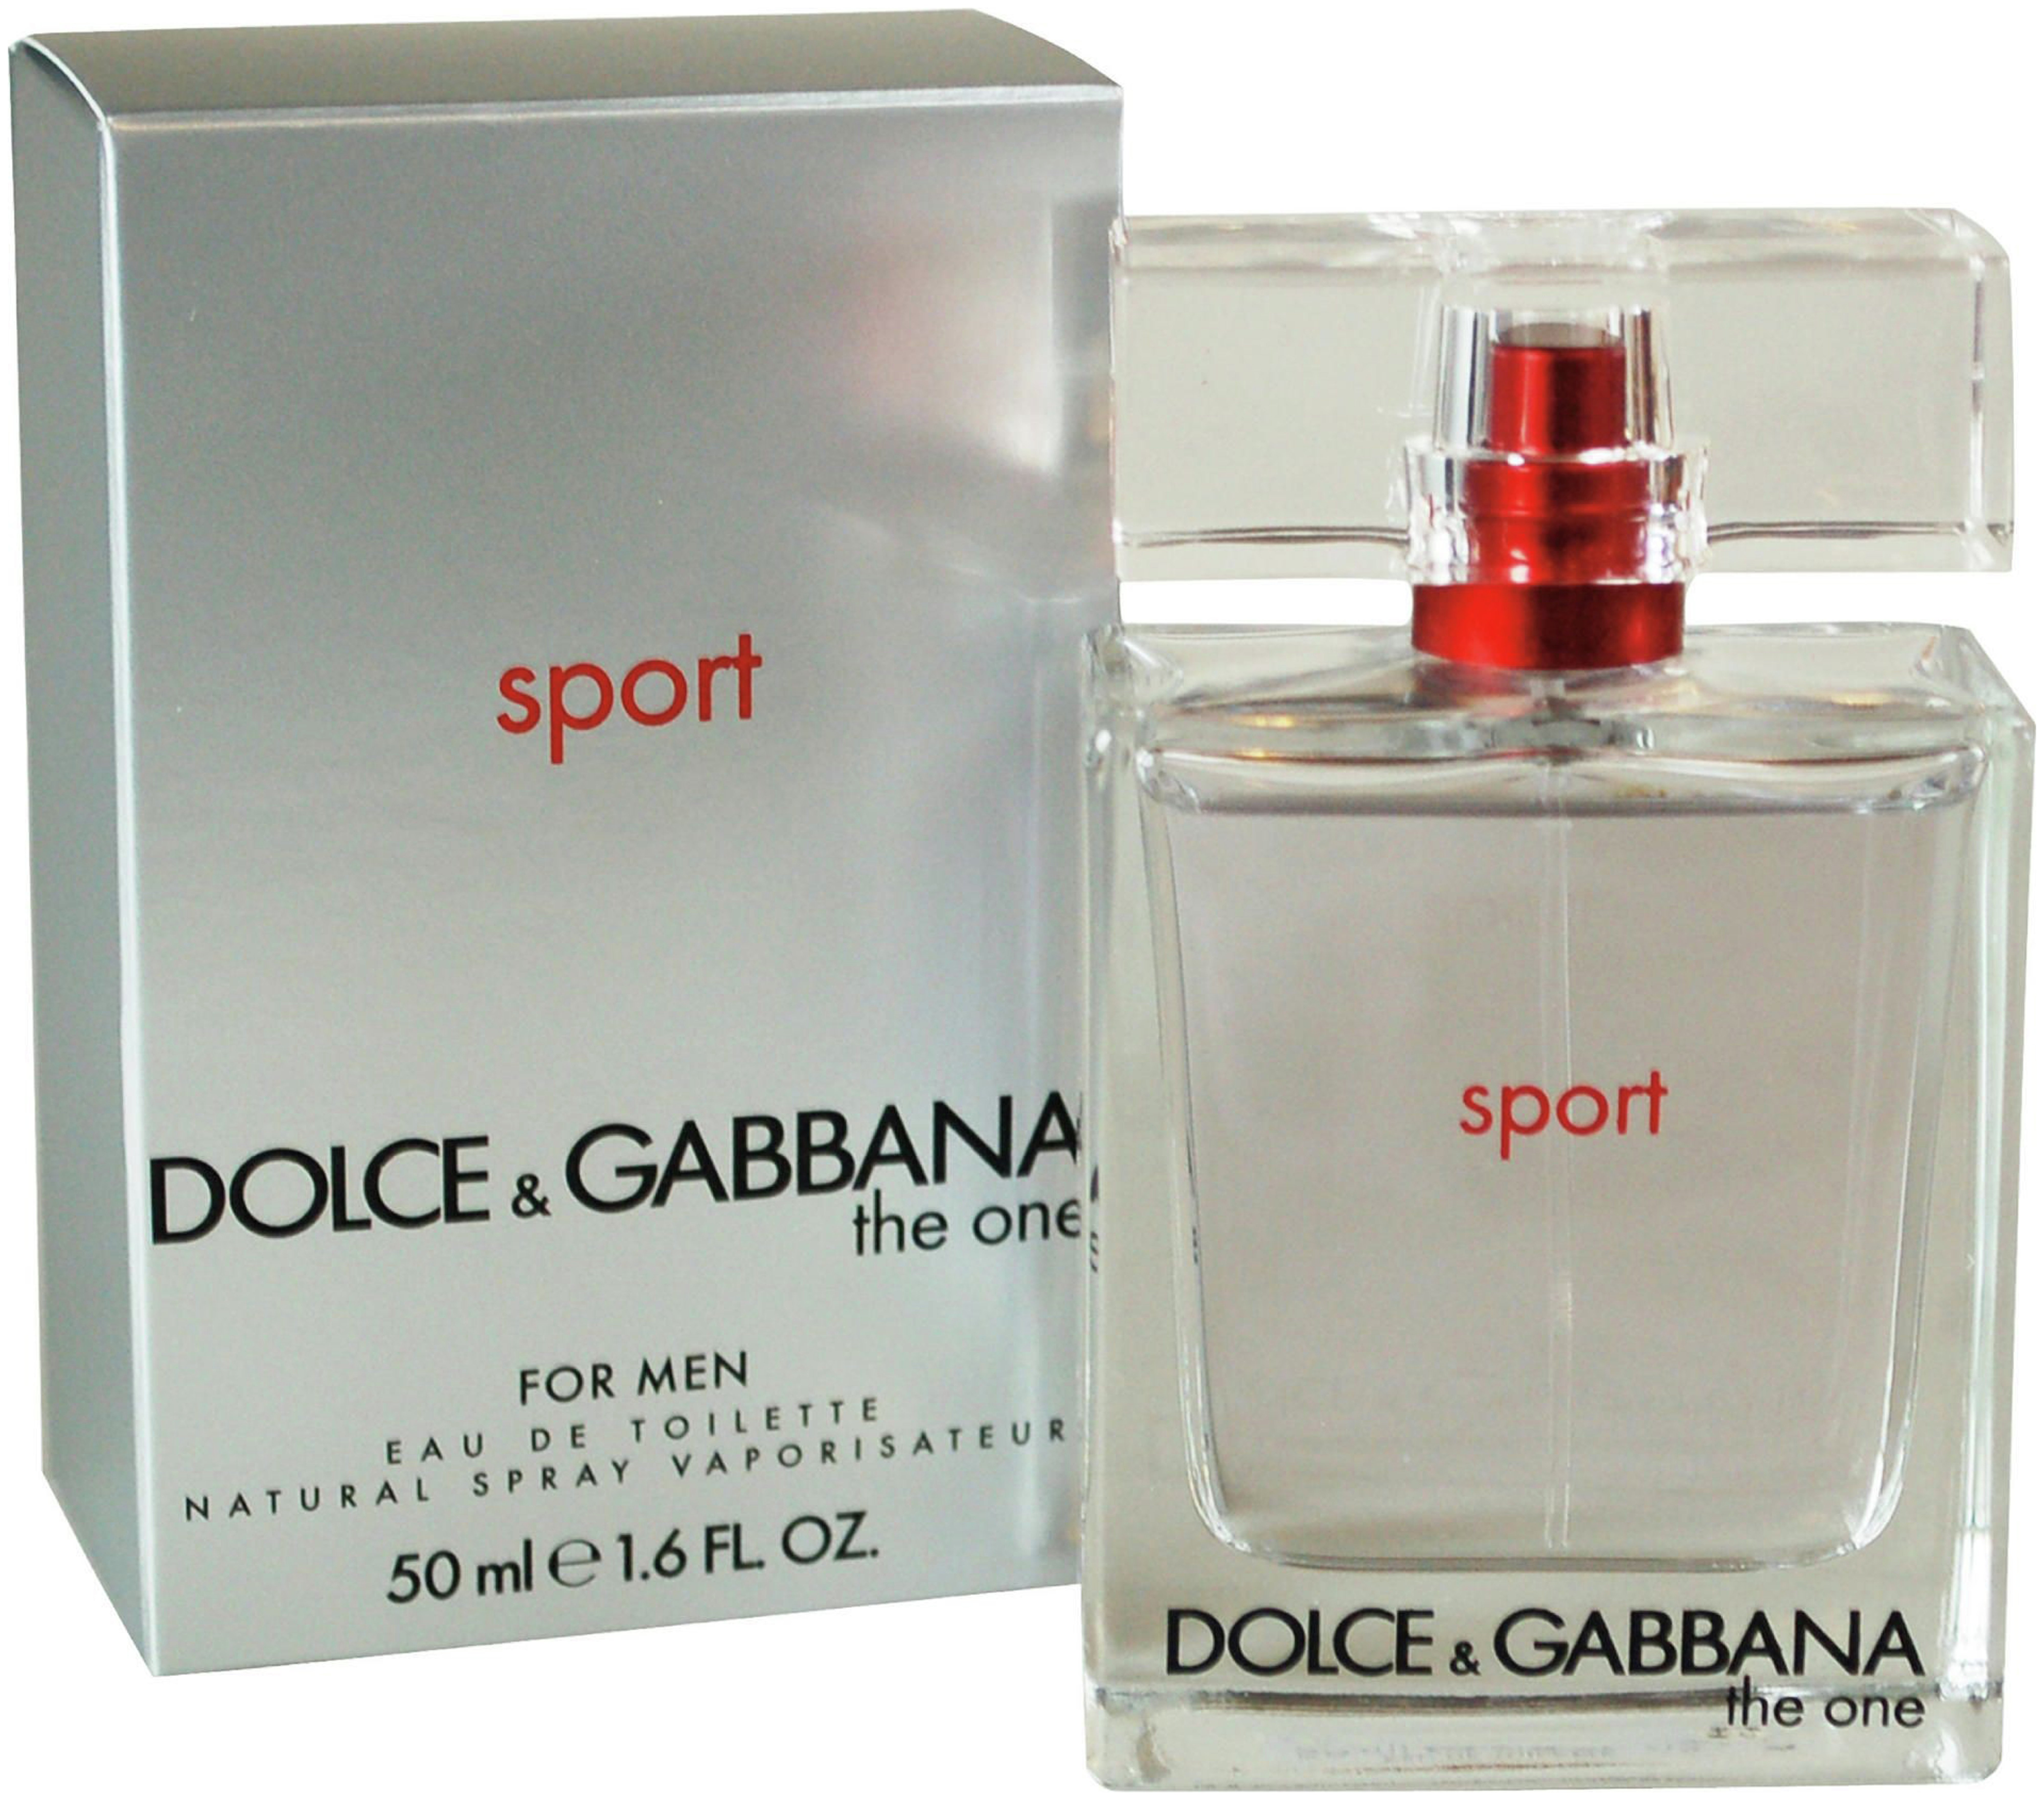 Dolce gabbana sport. Dolce Gabbana the one Sport. Dolce&Gabbana the one мужской EDT. Dolce Gabbana 30 ml the one. Dolce Gabbana Sport for men.